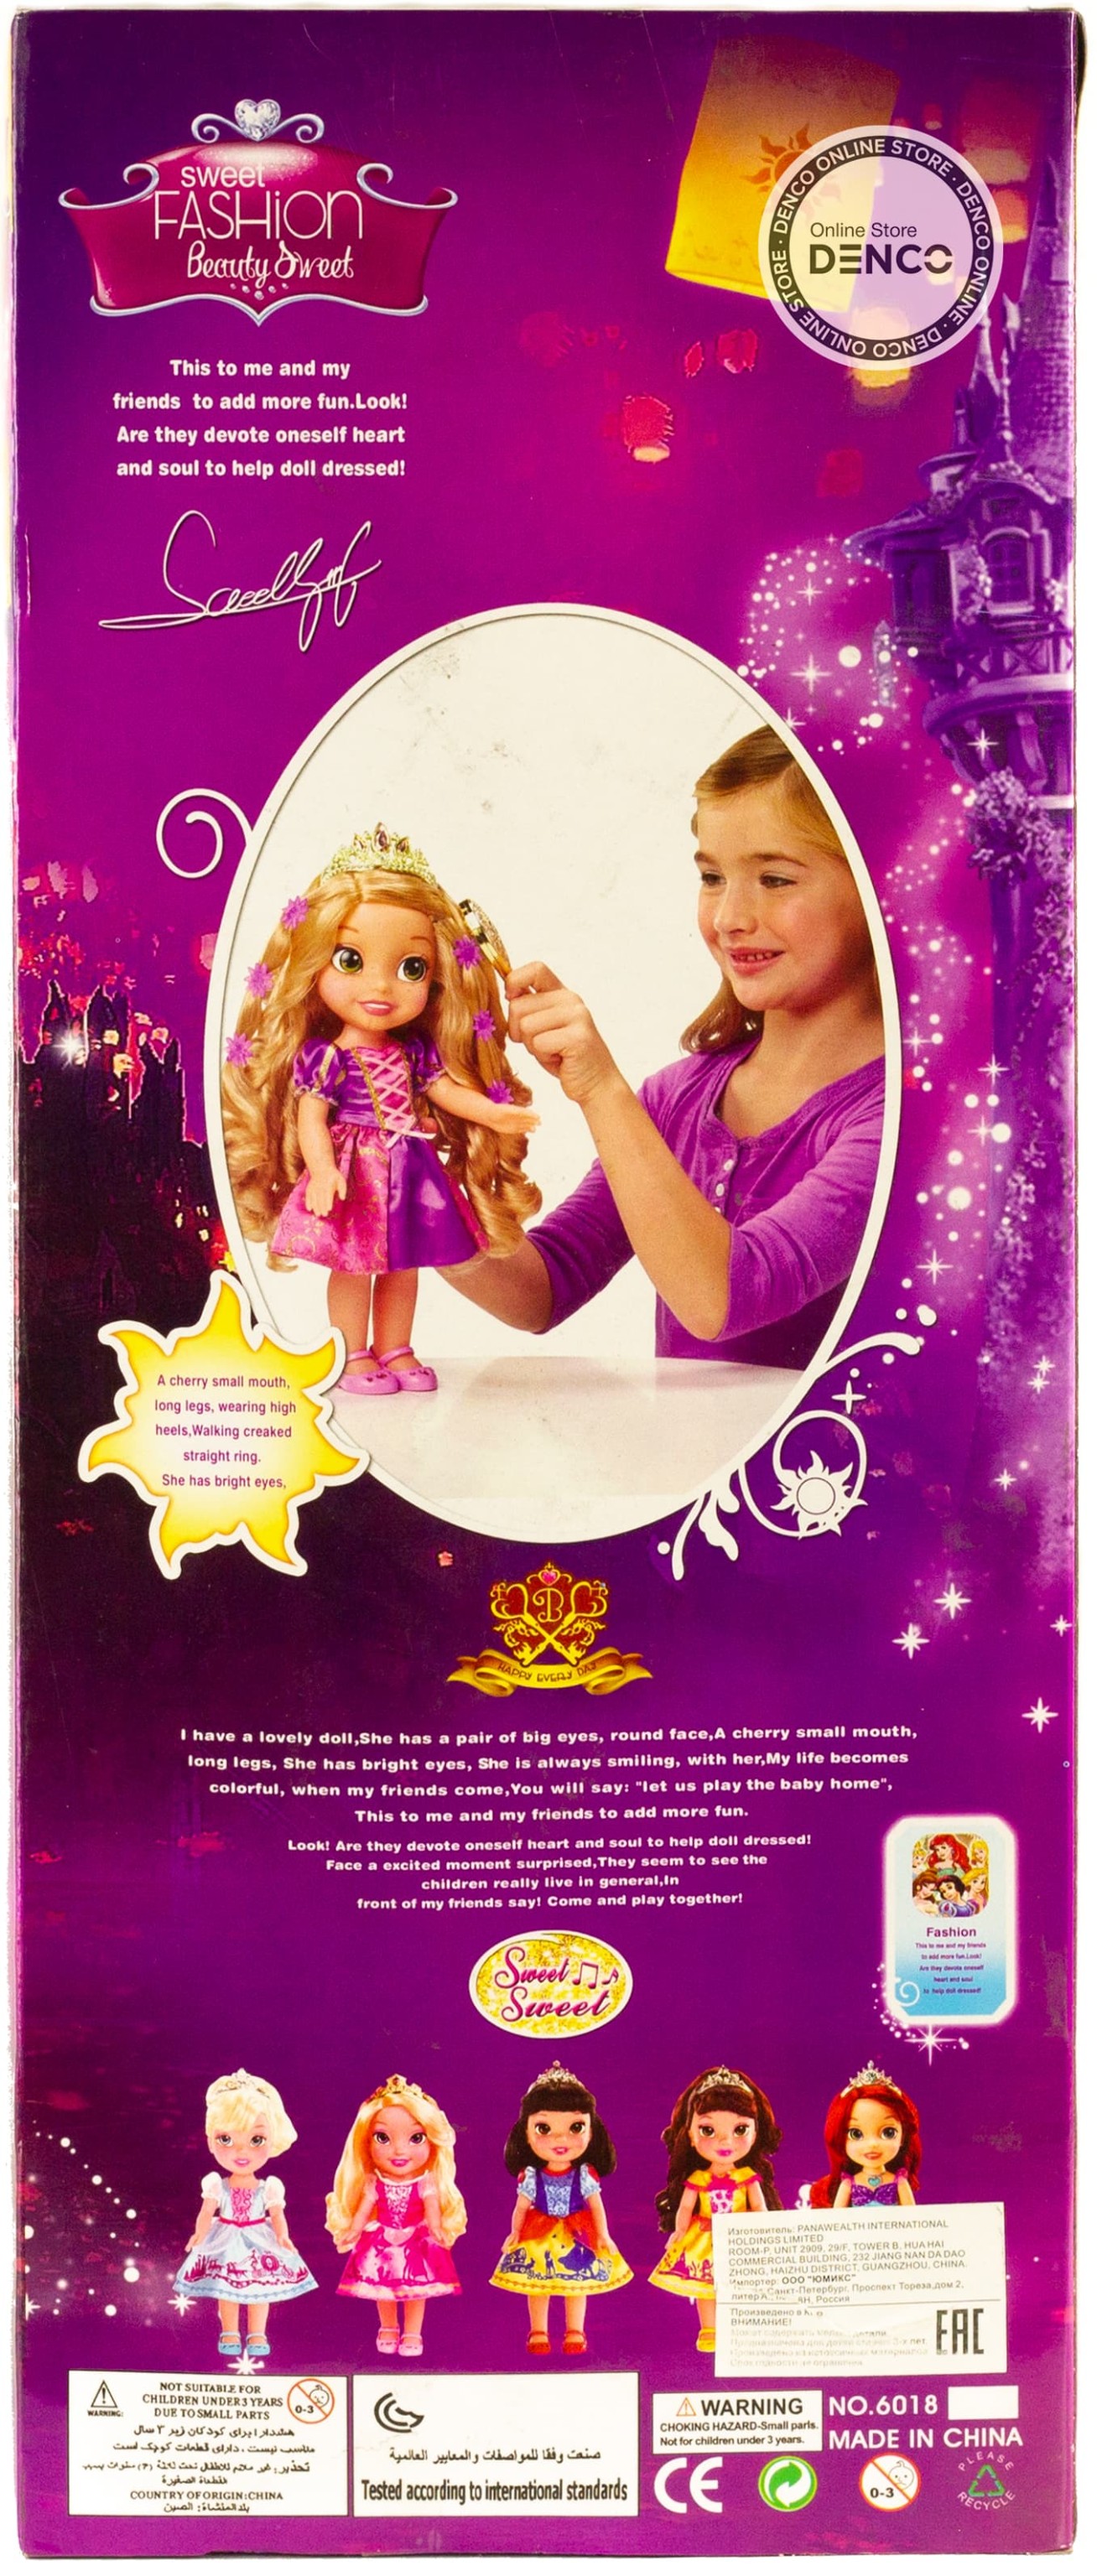 Кукла музыкальная «Принцесса Рапунцель» 46 см. Sweet, Fashion, Happy / 6018-6